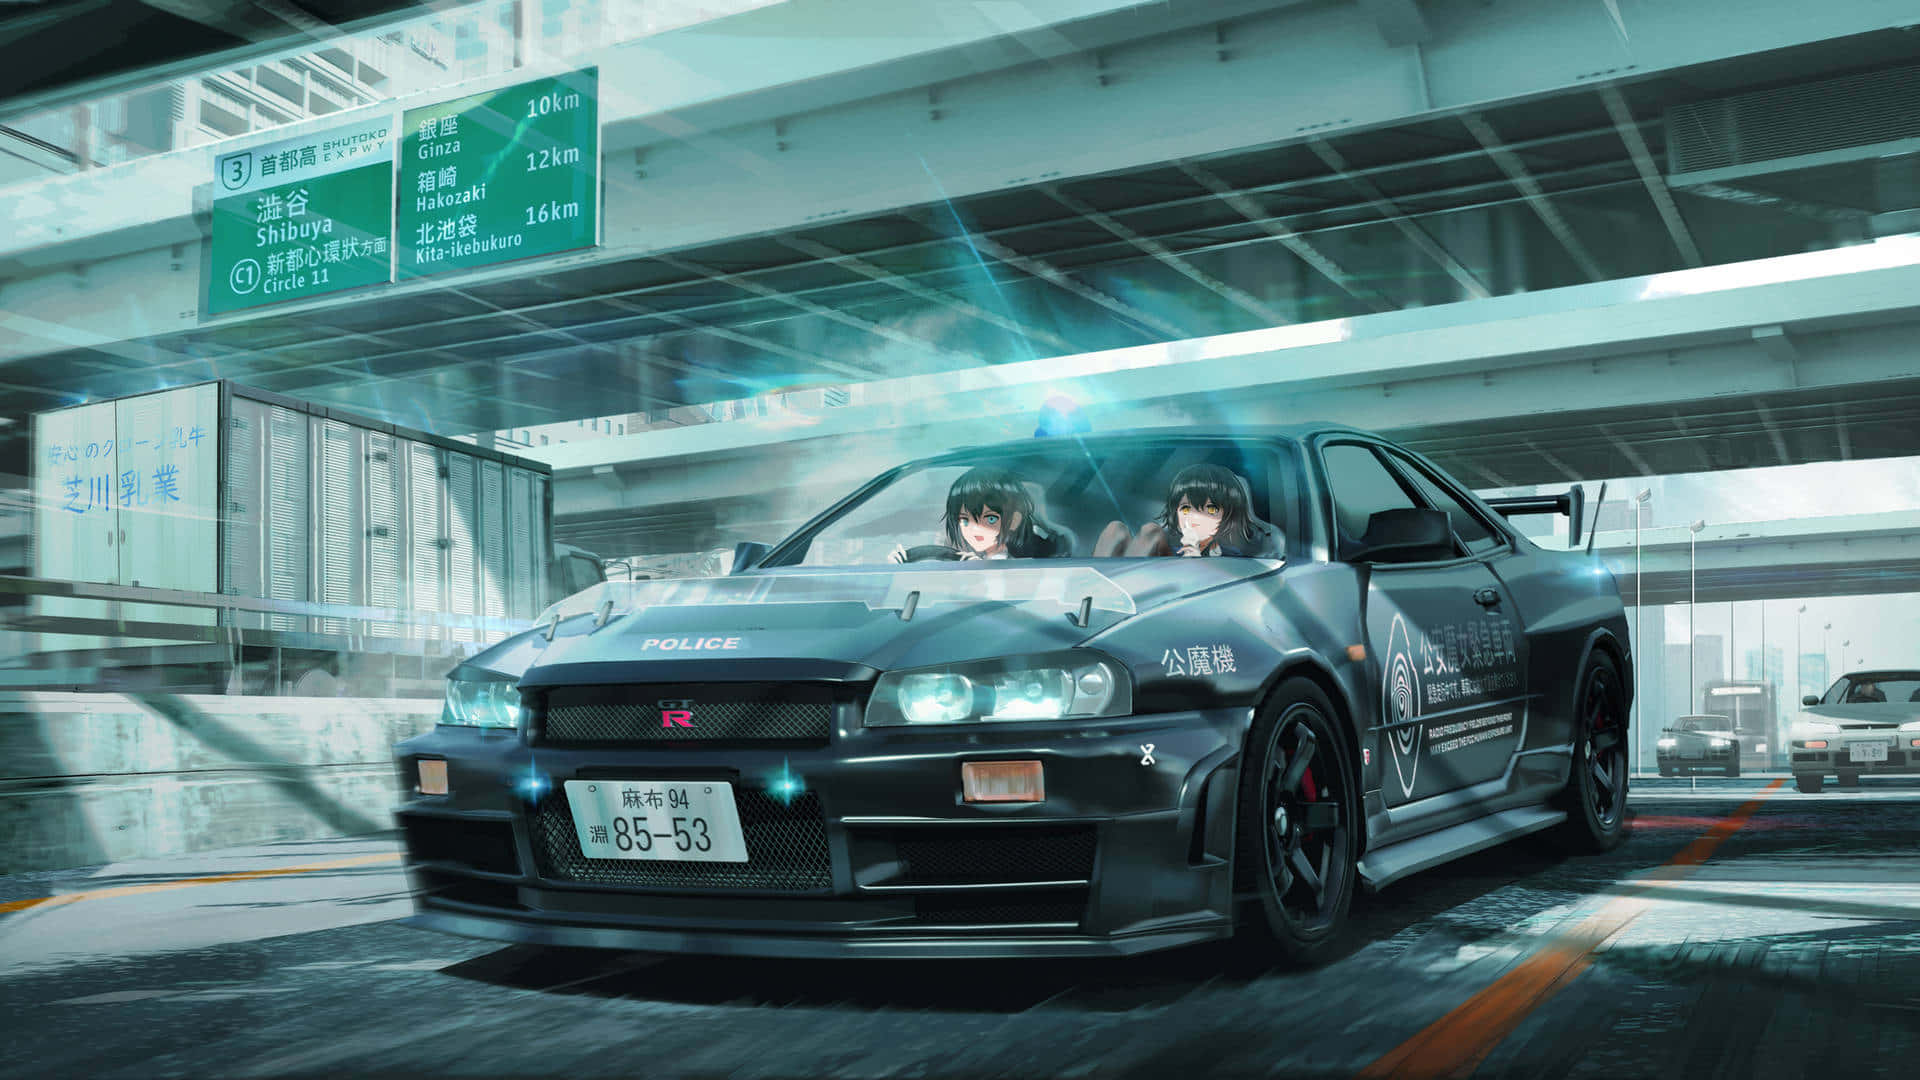 Unaufhaltsamekraft - Ein Anime-auto